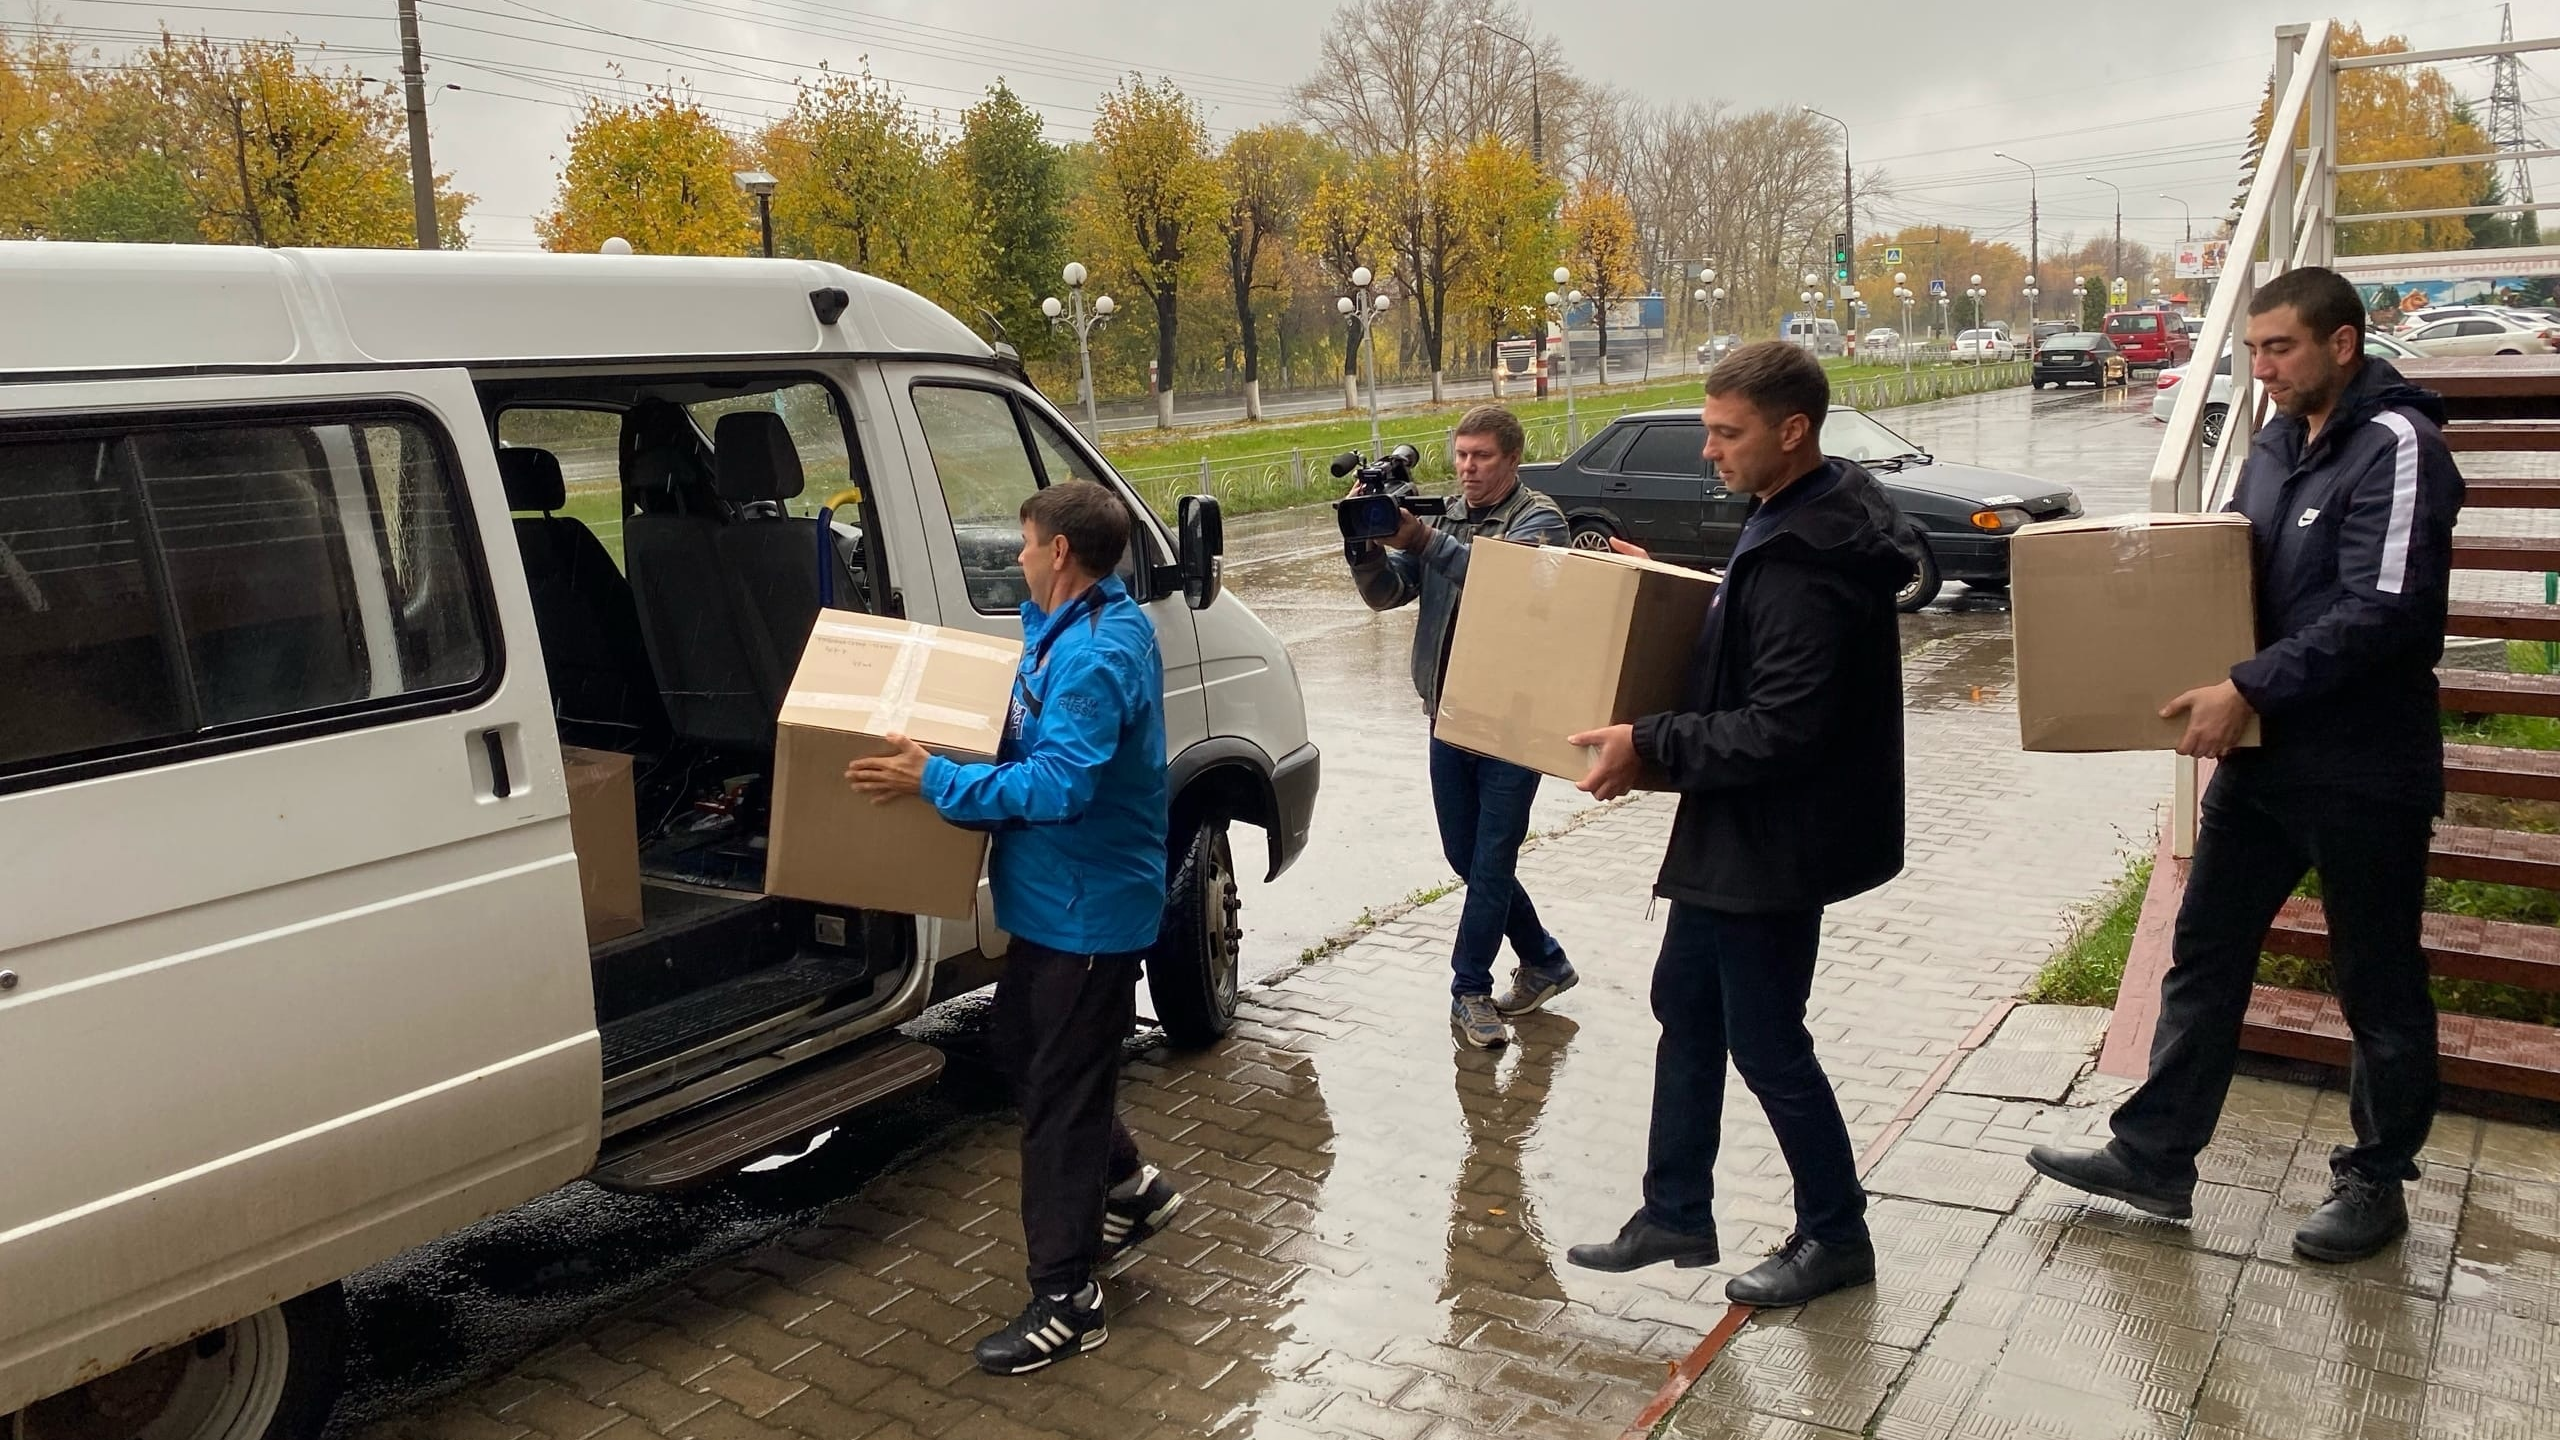 Общественники доставят военнослужащим более 500 комплектов термобелья от ульяновского бизнеса